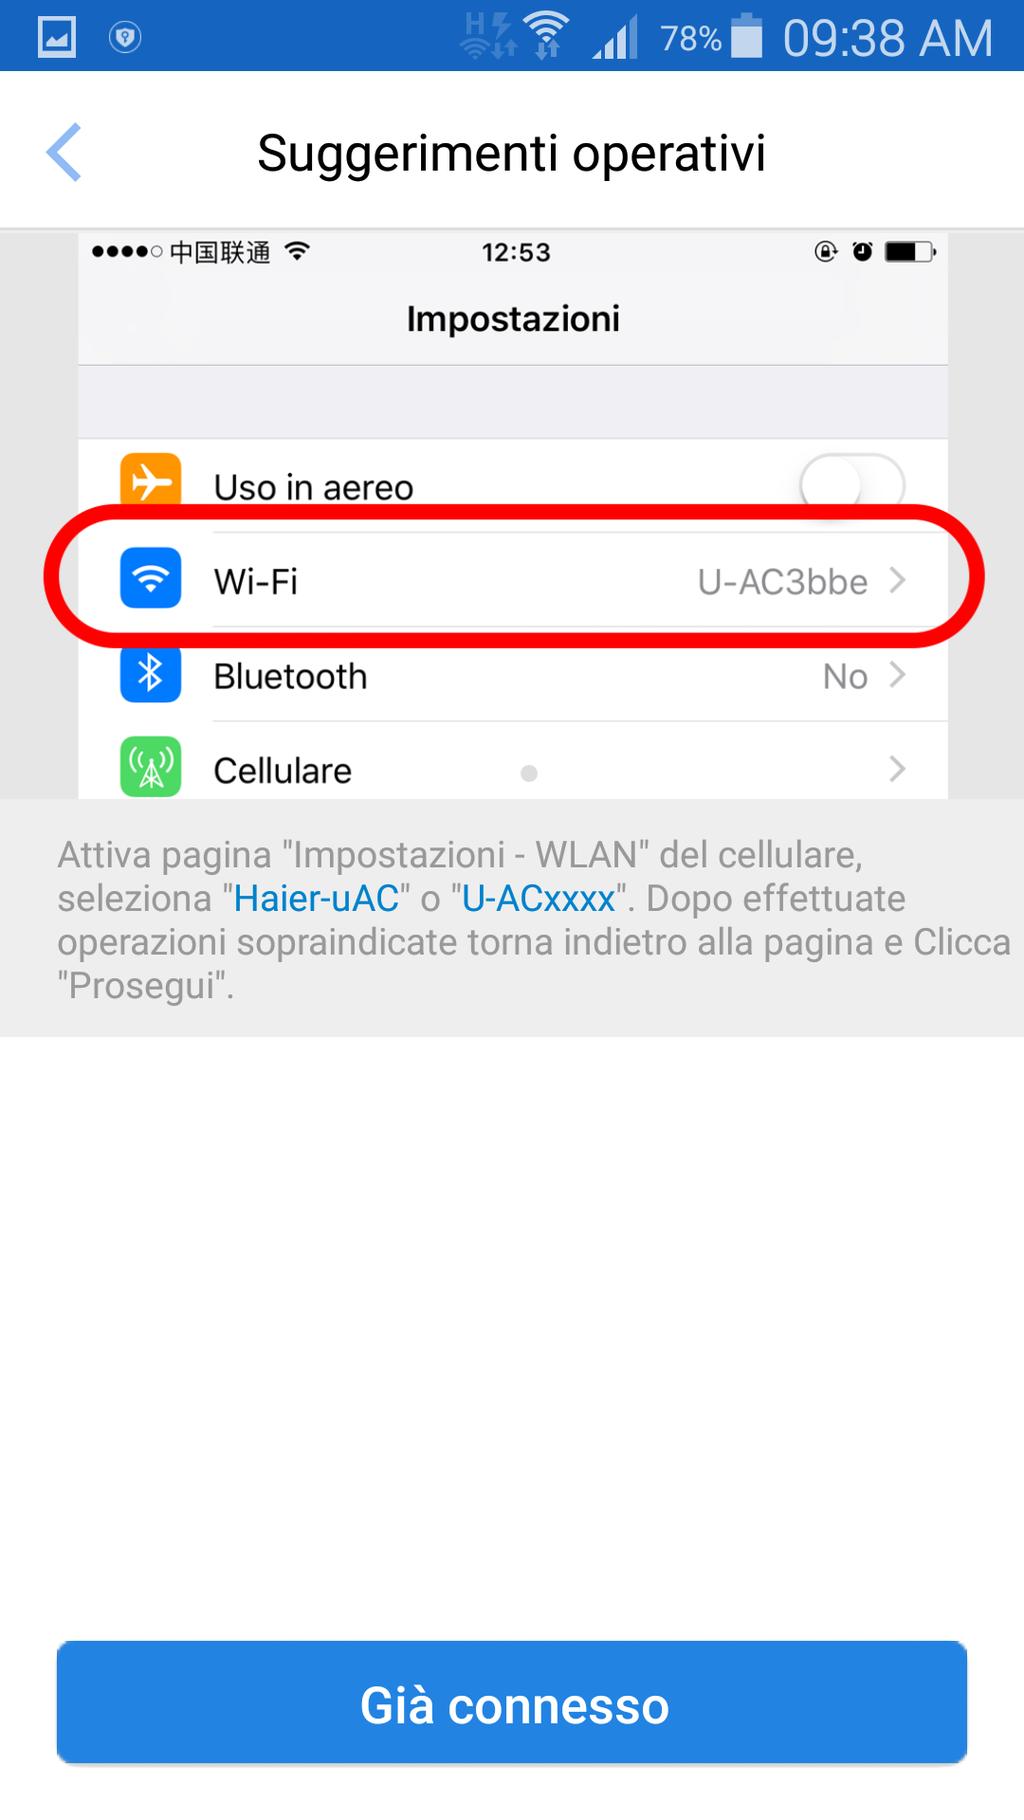 18 19 Accedi alla pagina delle impostazioni di rete WIFI dal tuo cellulare. Seleziona la rete "Haier-uAC" o "U-ACxxxx".